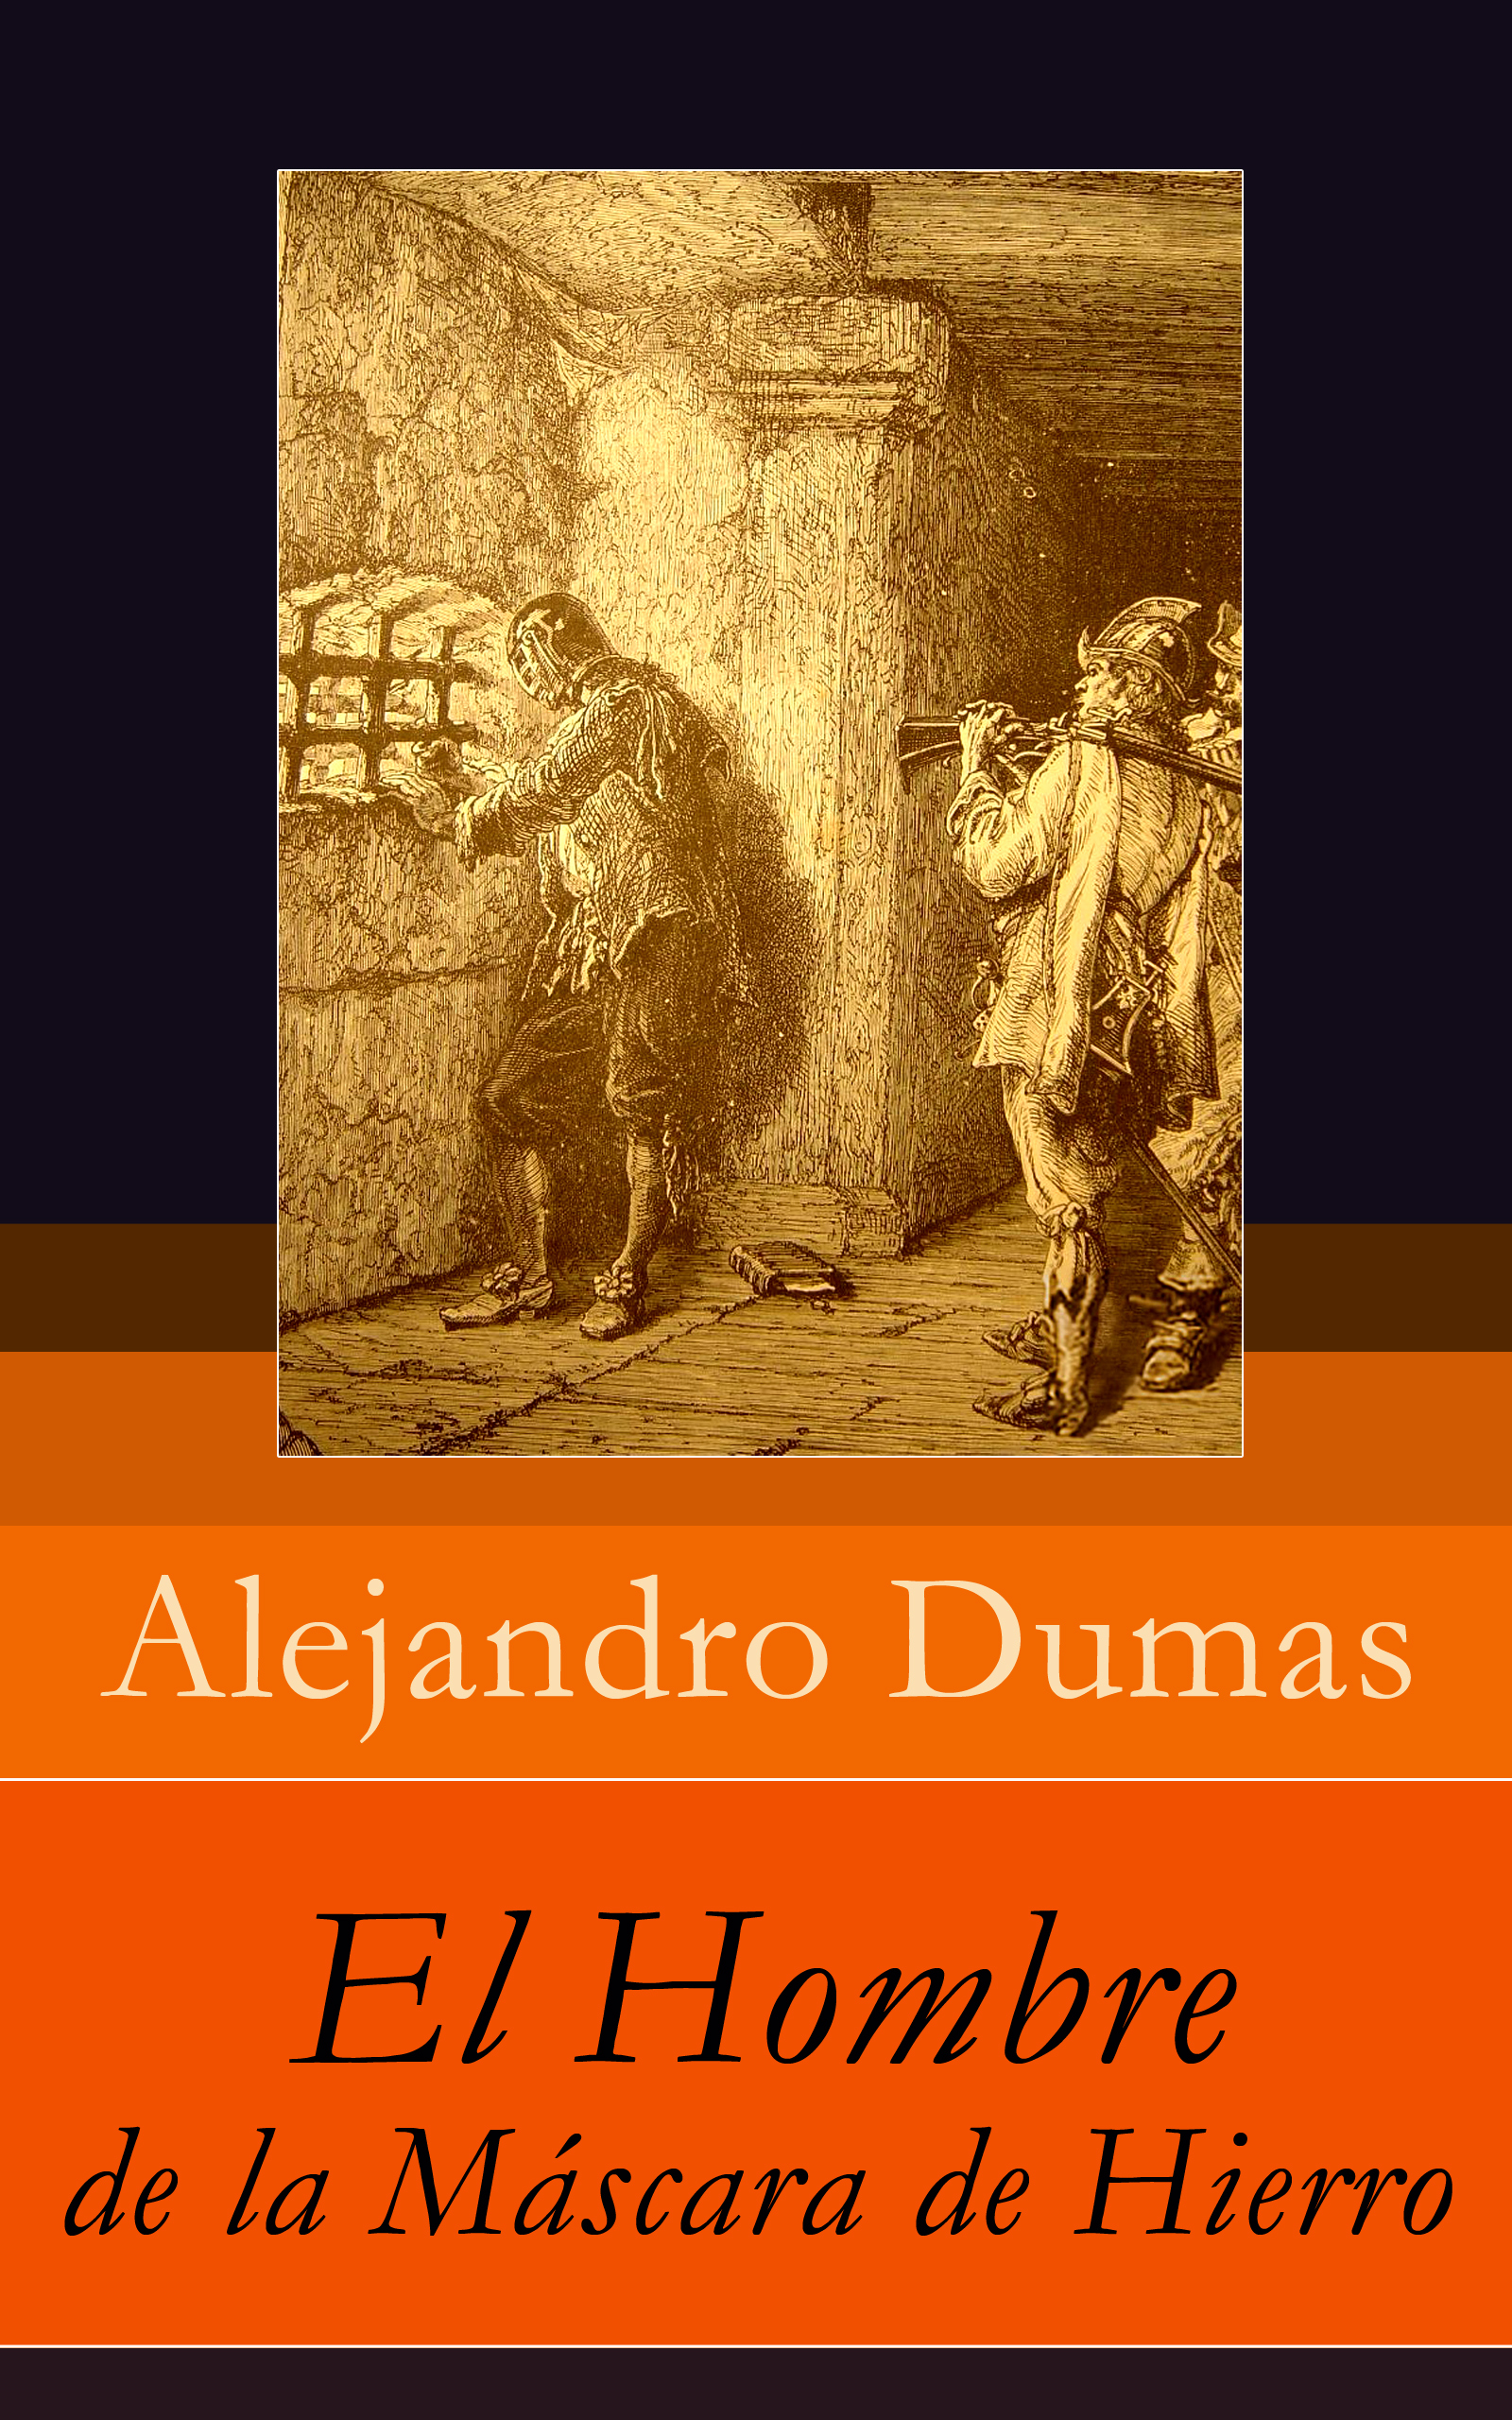 Ebook El Hombre de la Máscara de Hierro por Alejandro Dumas - 7Switch